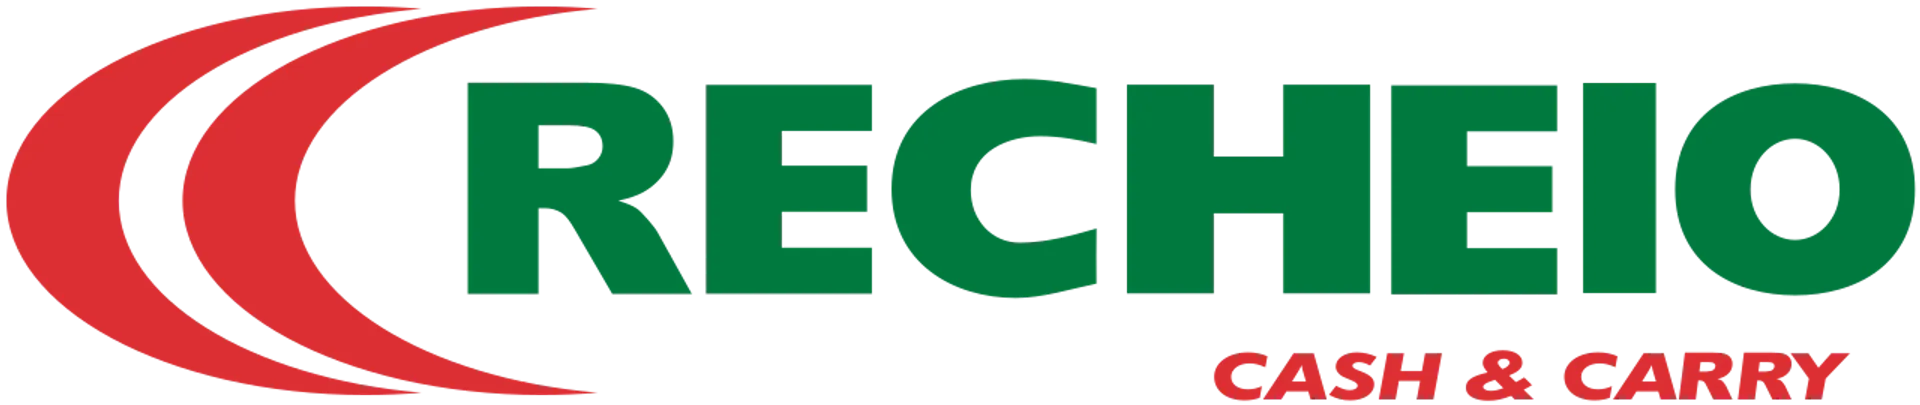 RECHEIO logo de folhetos